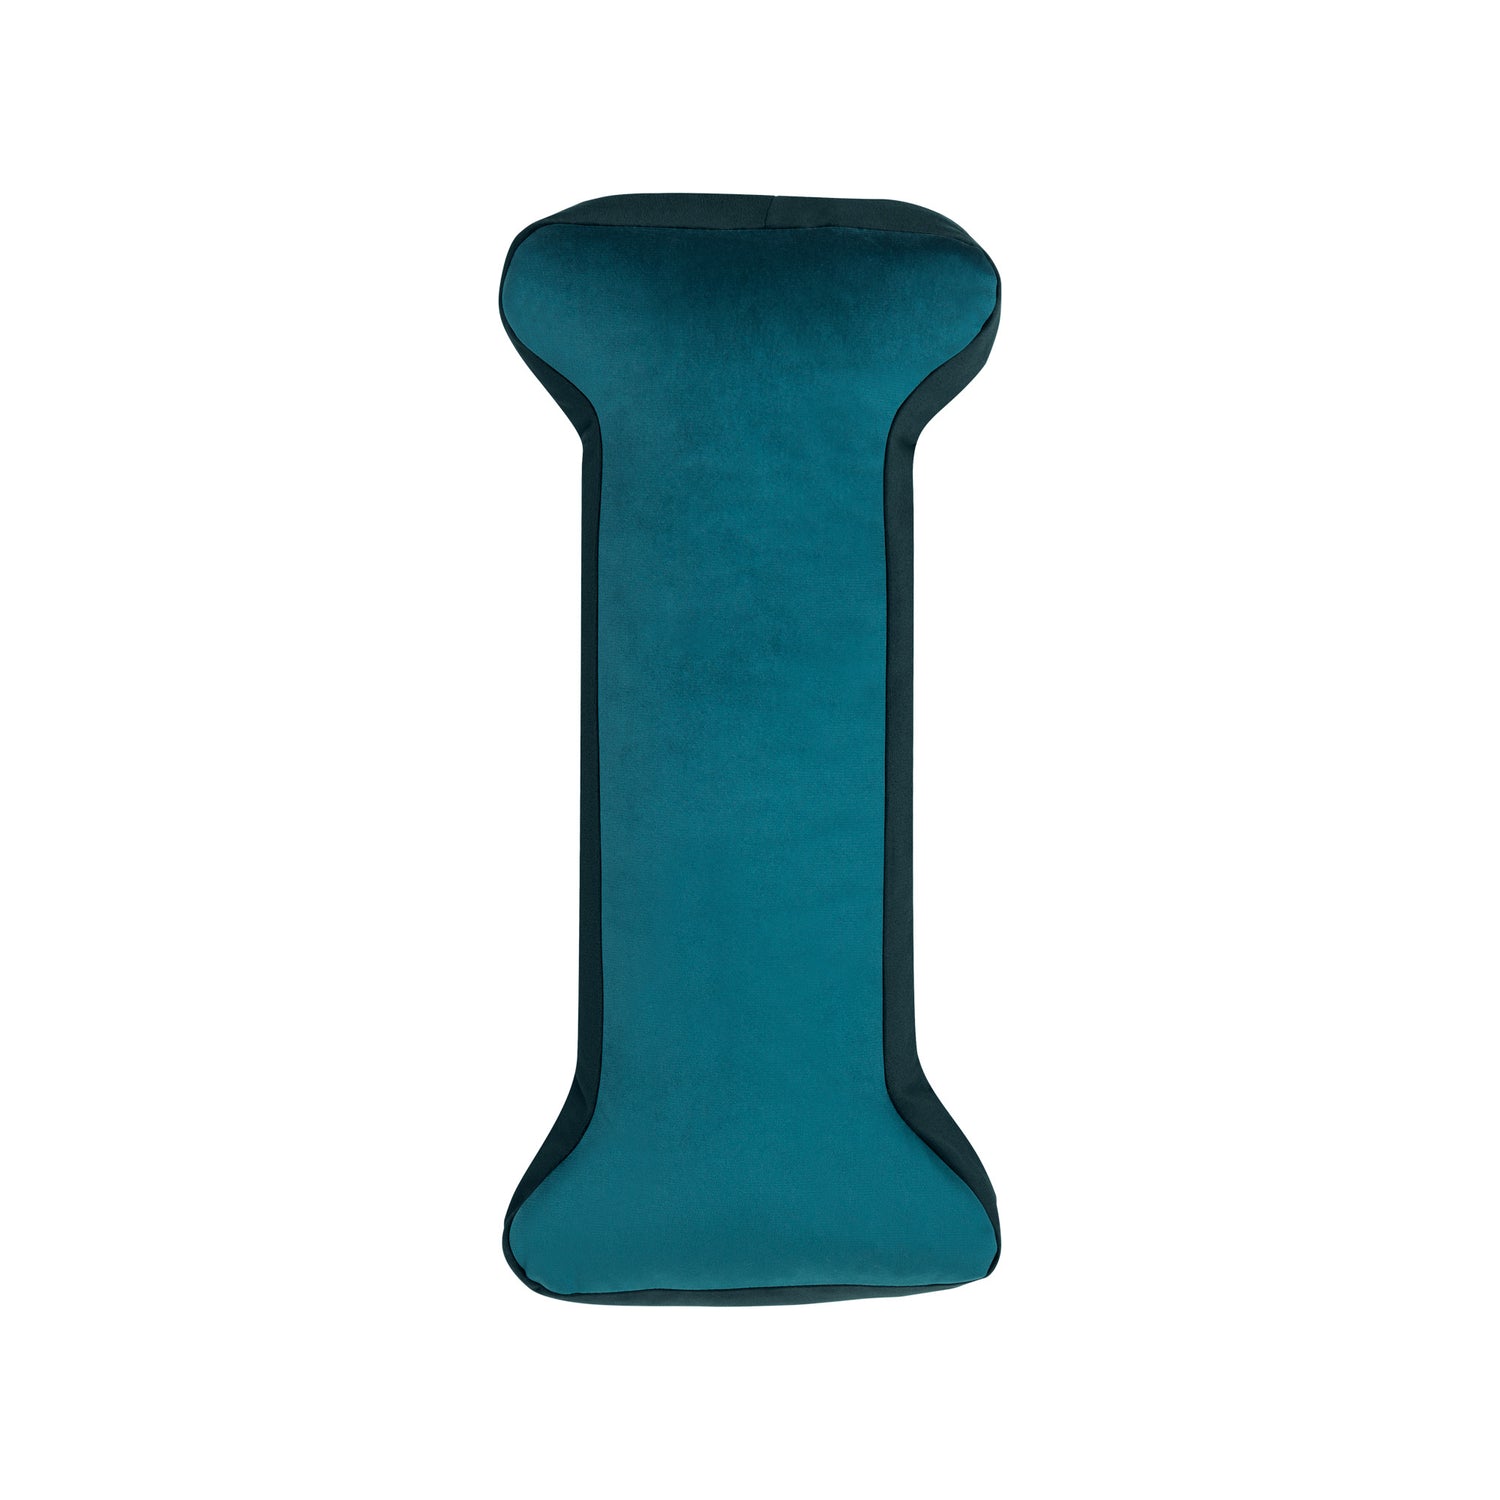  Velvet Poduszka Litera Poduszka I Zielione. Poduszka w kształcie litery. Produkt ręcznie robiony.